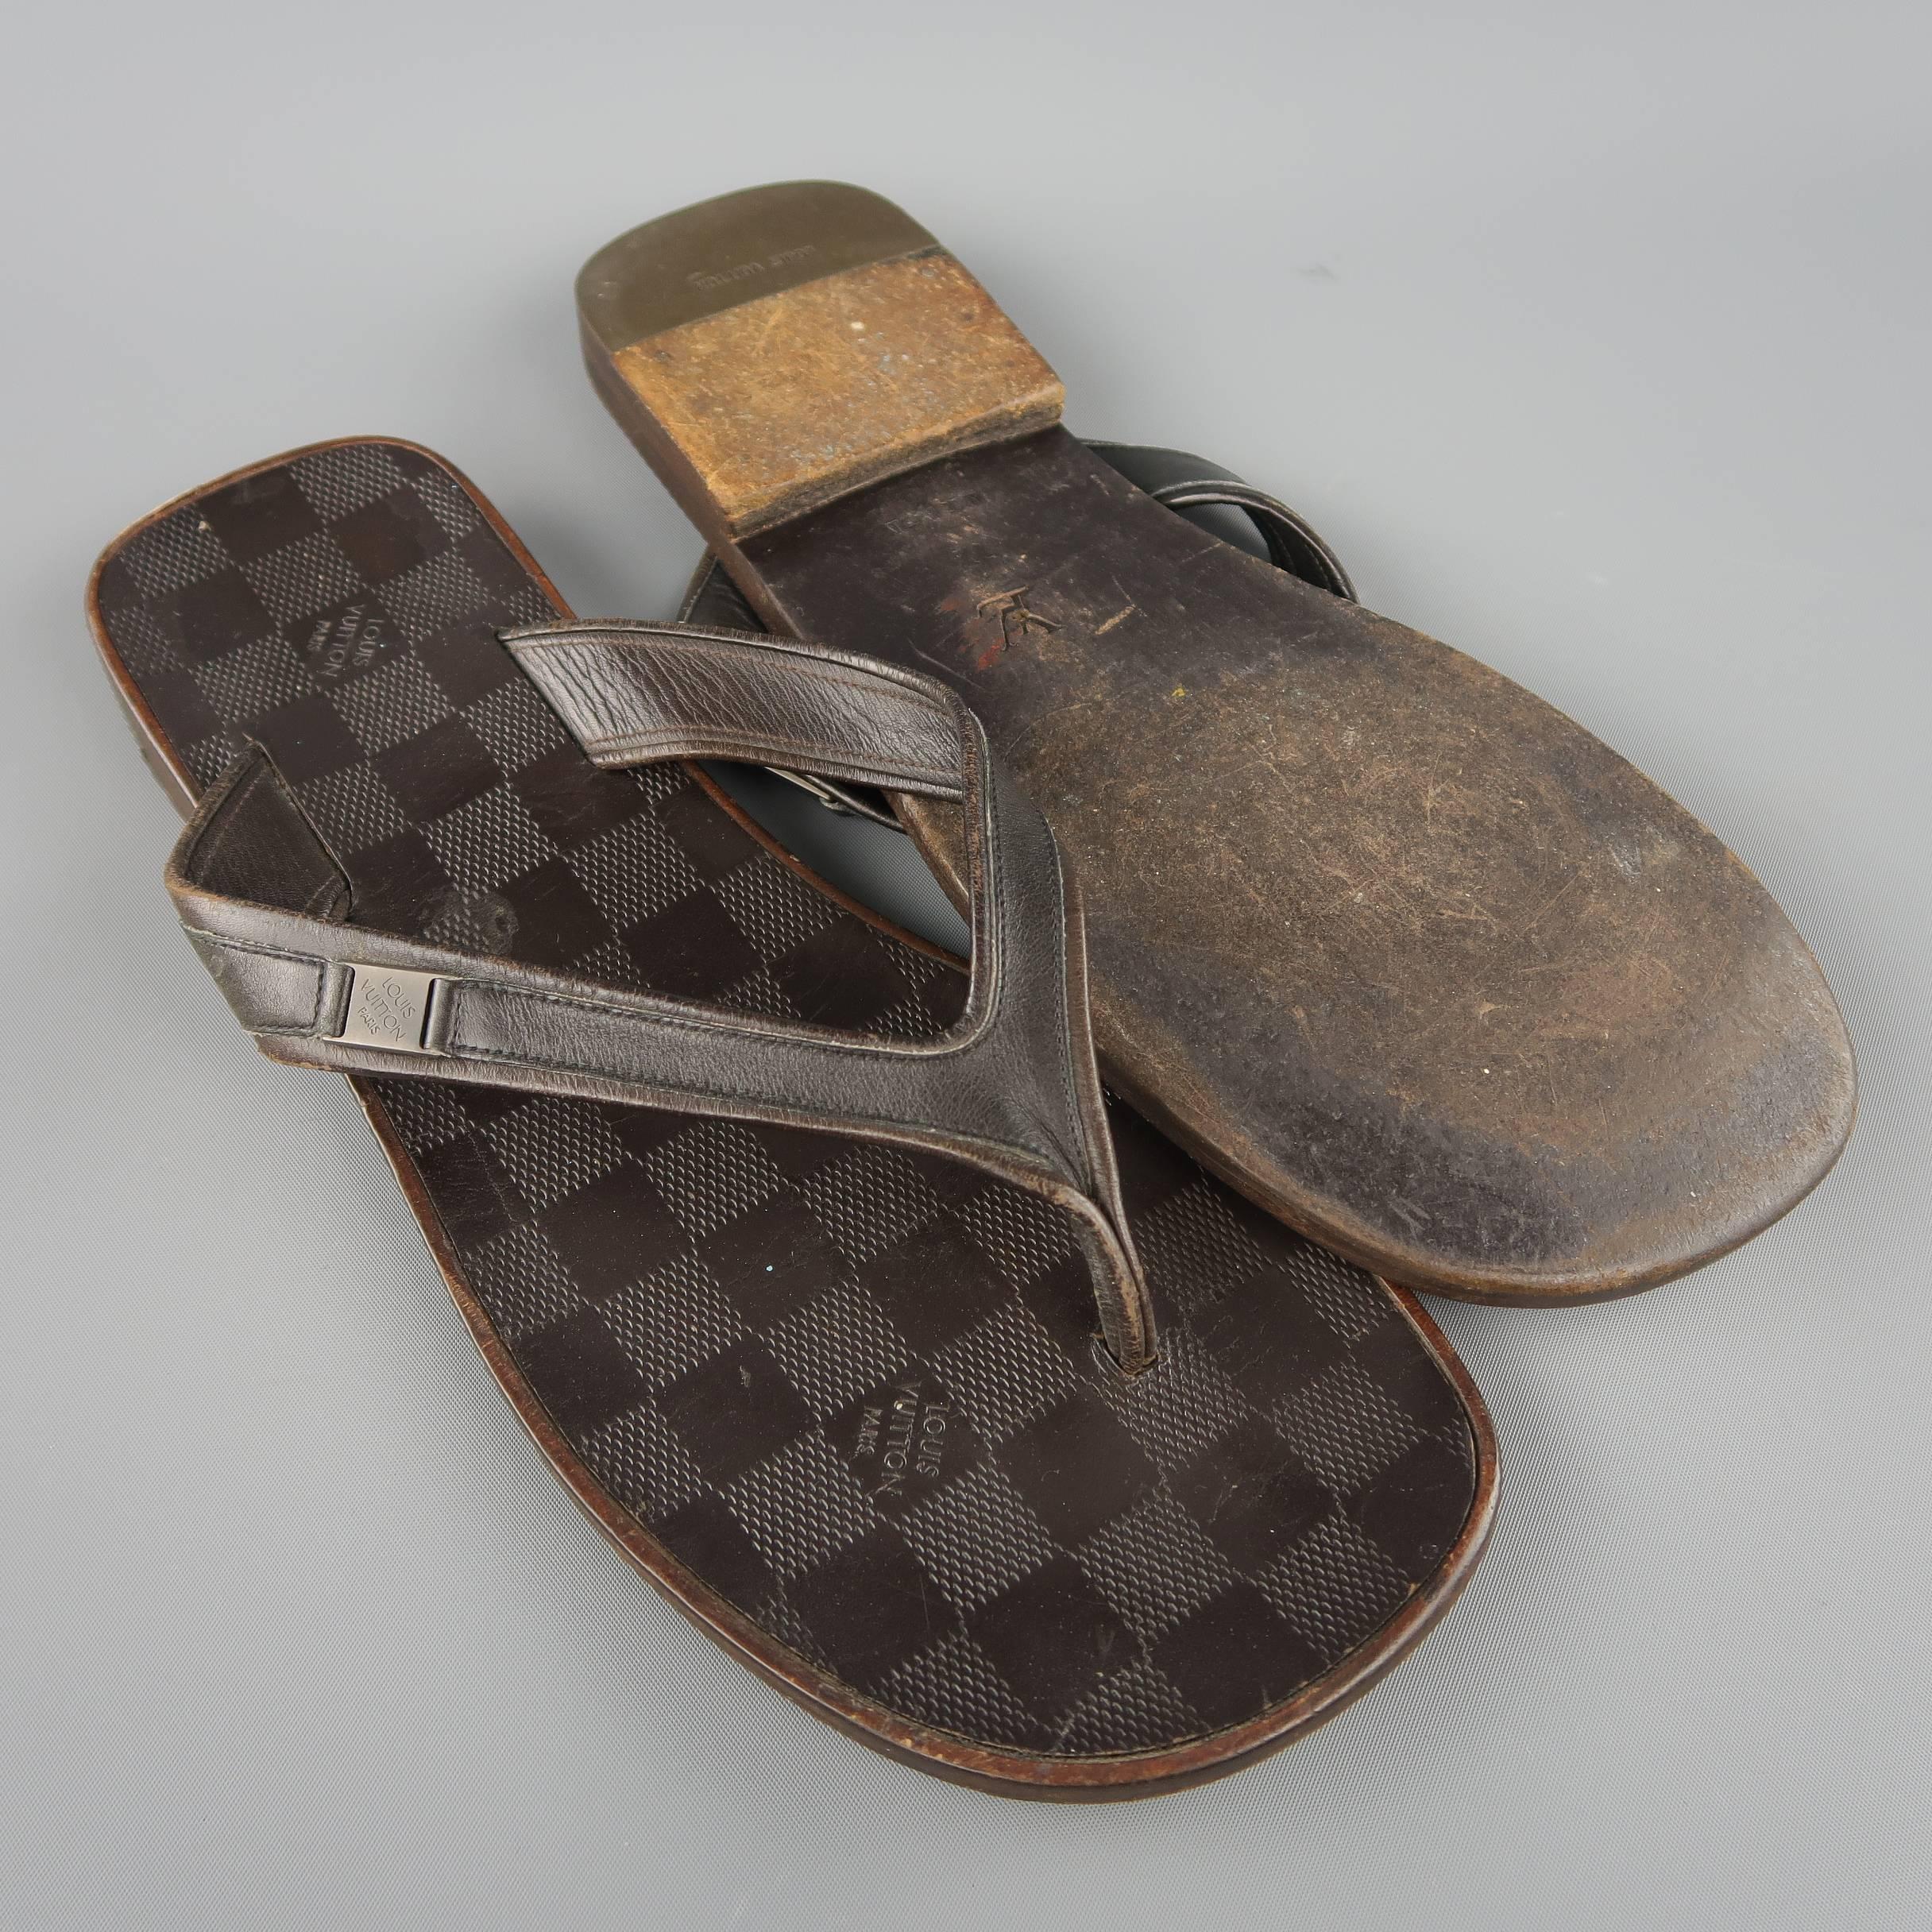 Louis Vuitton Men's Authenticated Sandal